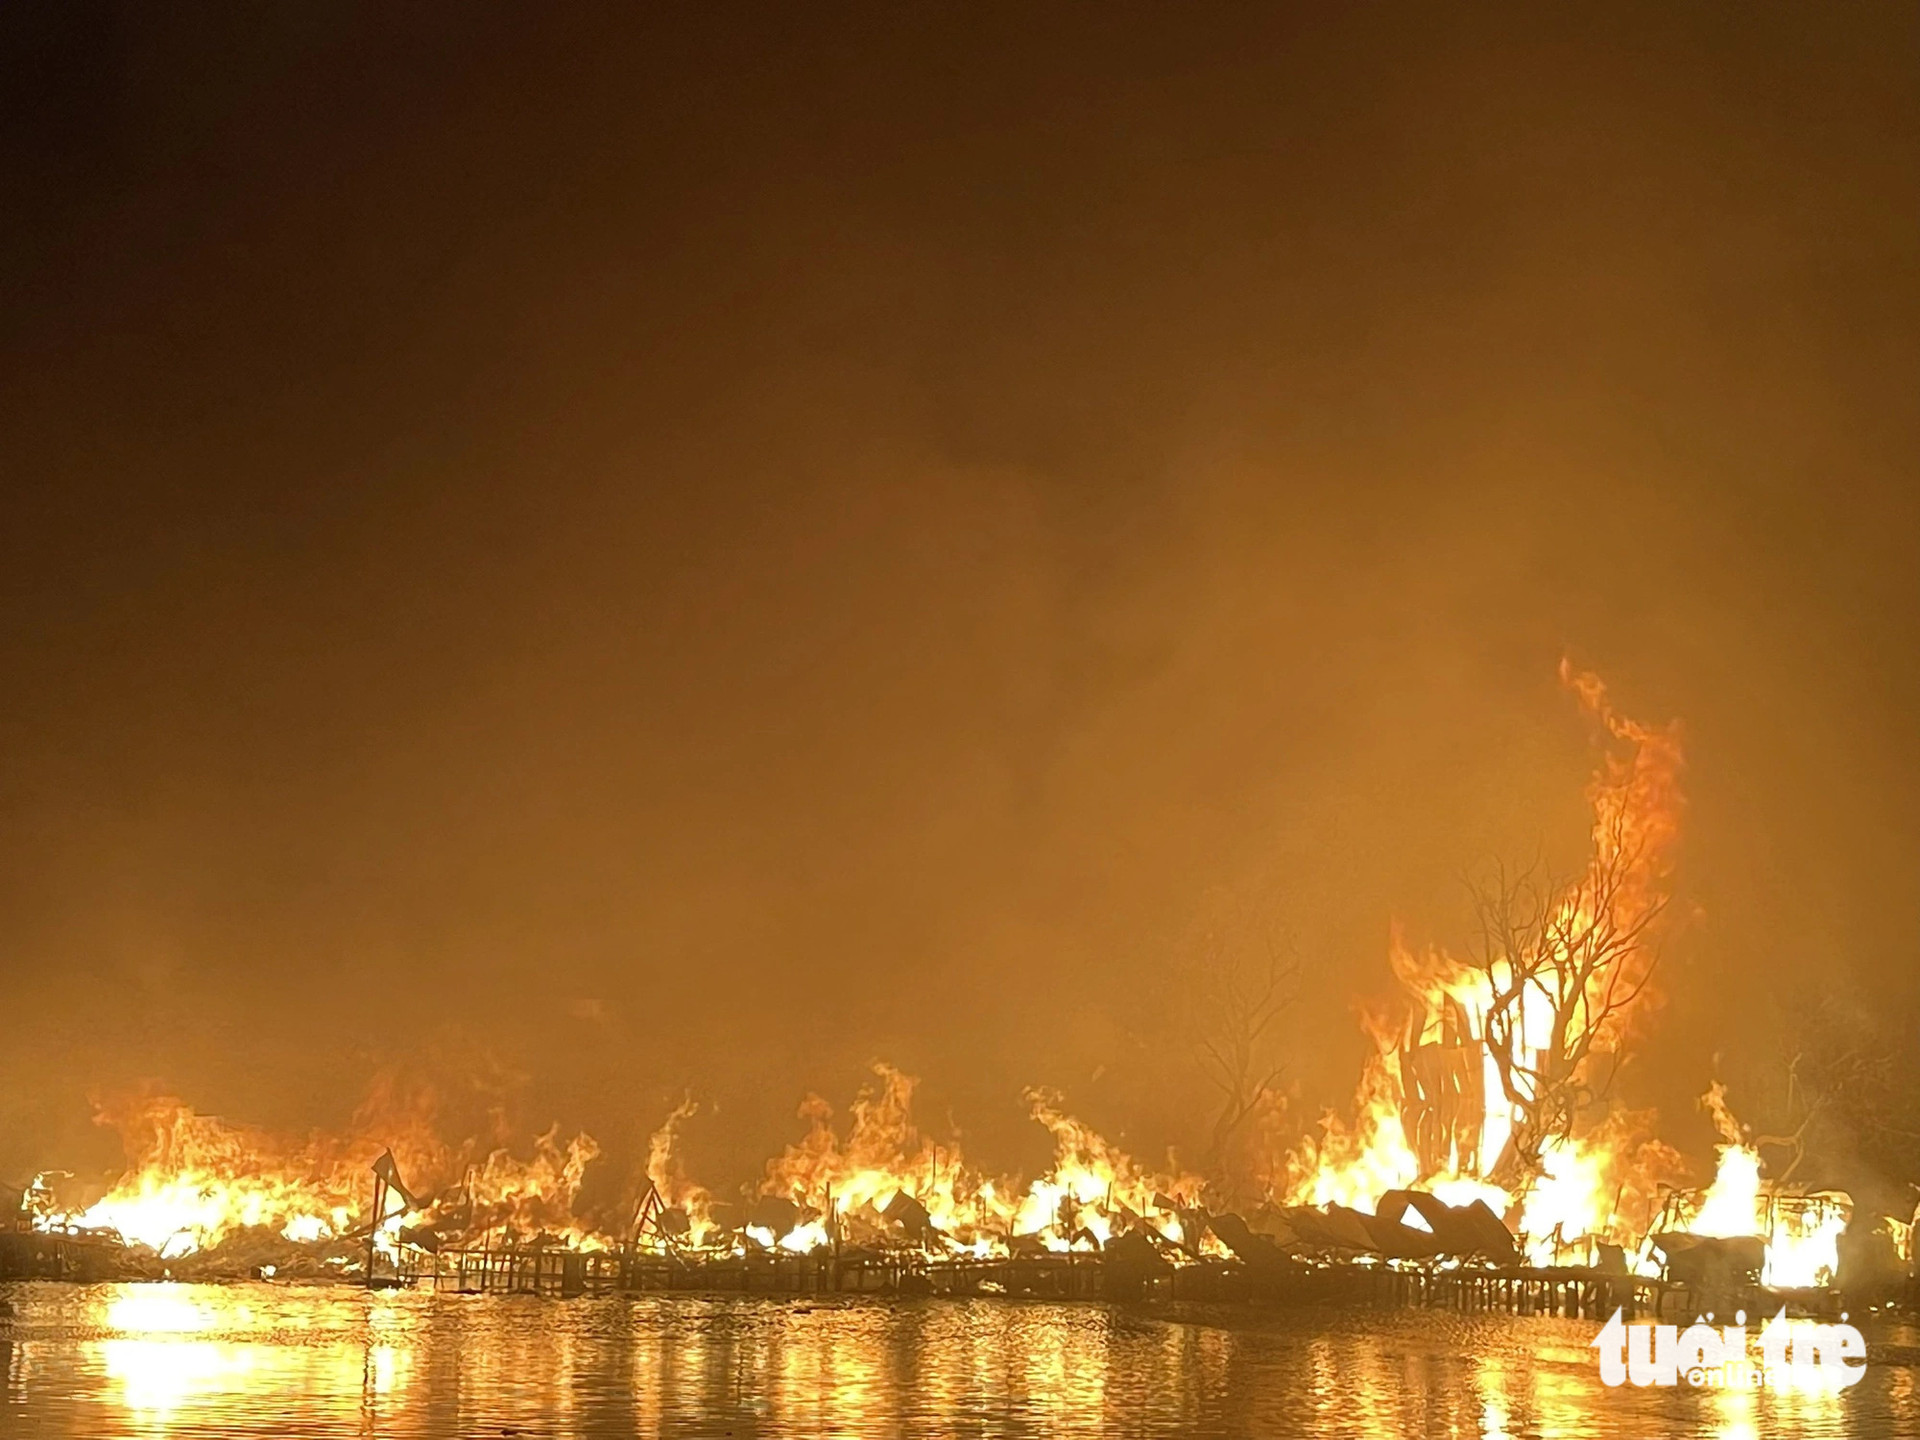 Dãy nhà ven kênh ở quận 8 bốc cháy dữ dội, ngọn lửa đỏ rực cả khung trời vào tối 1-4 - Ảnh: THÀNH HUY